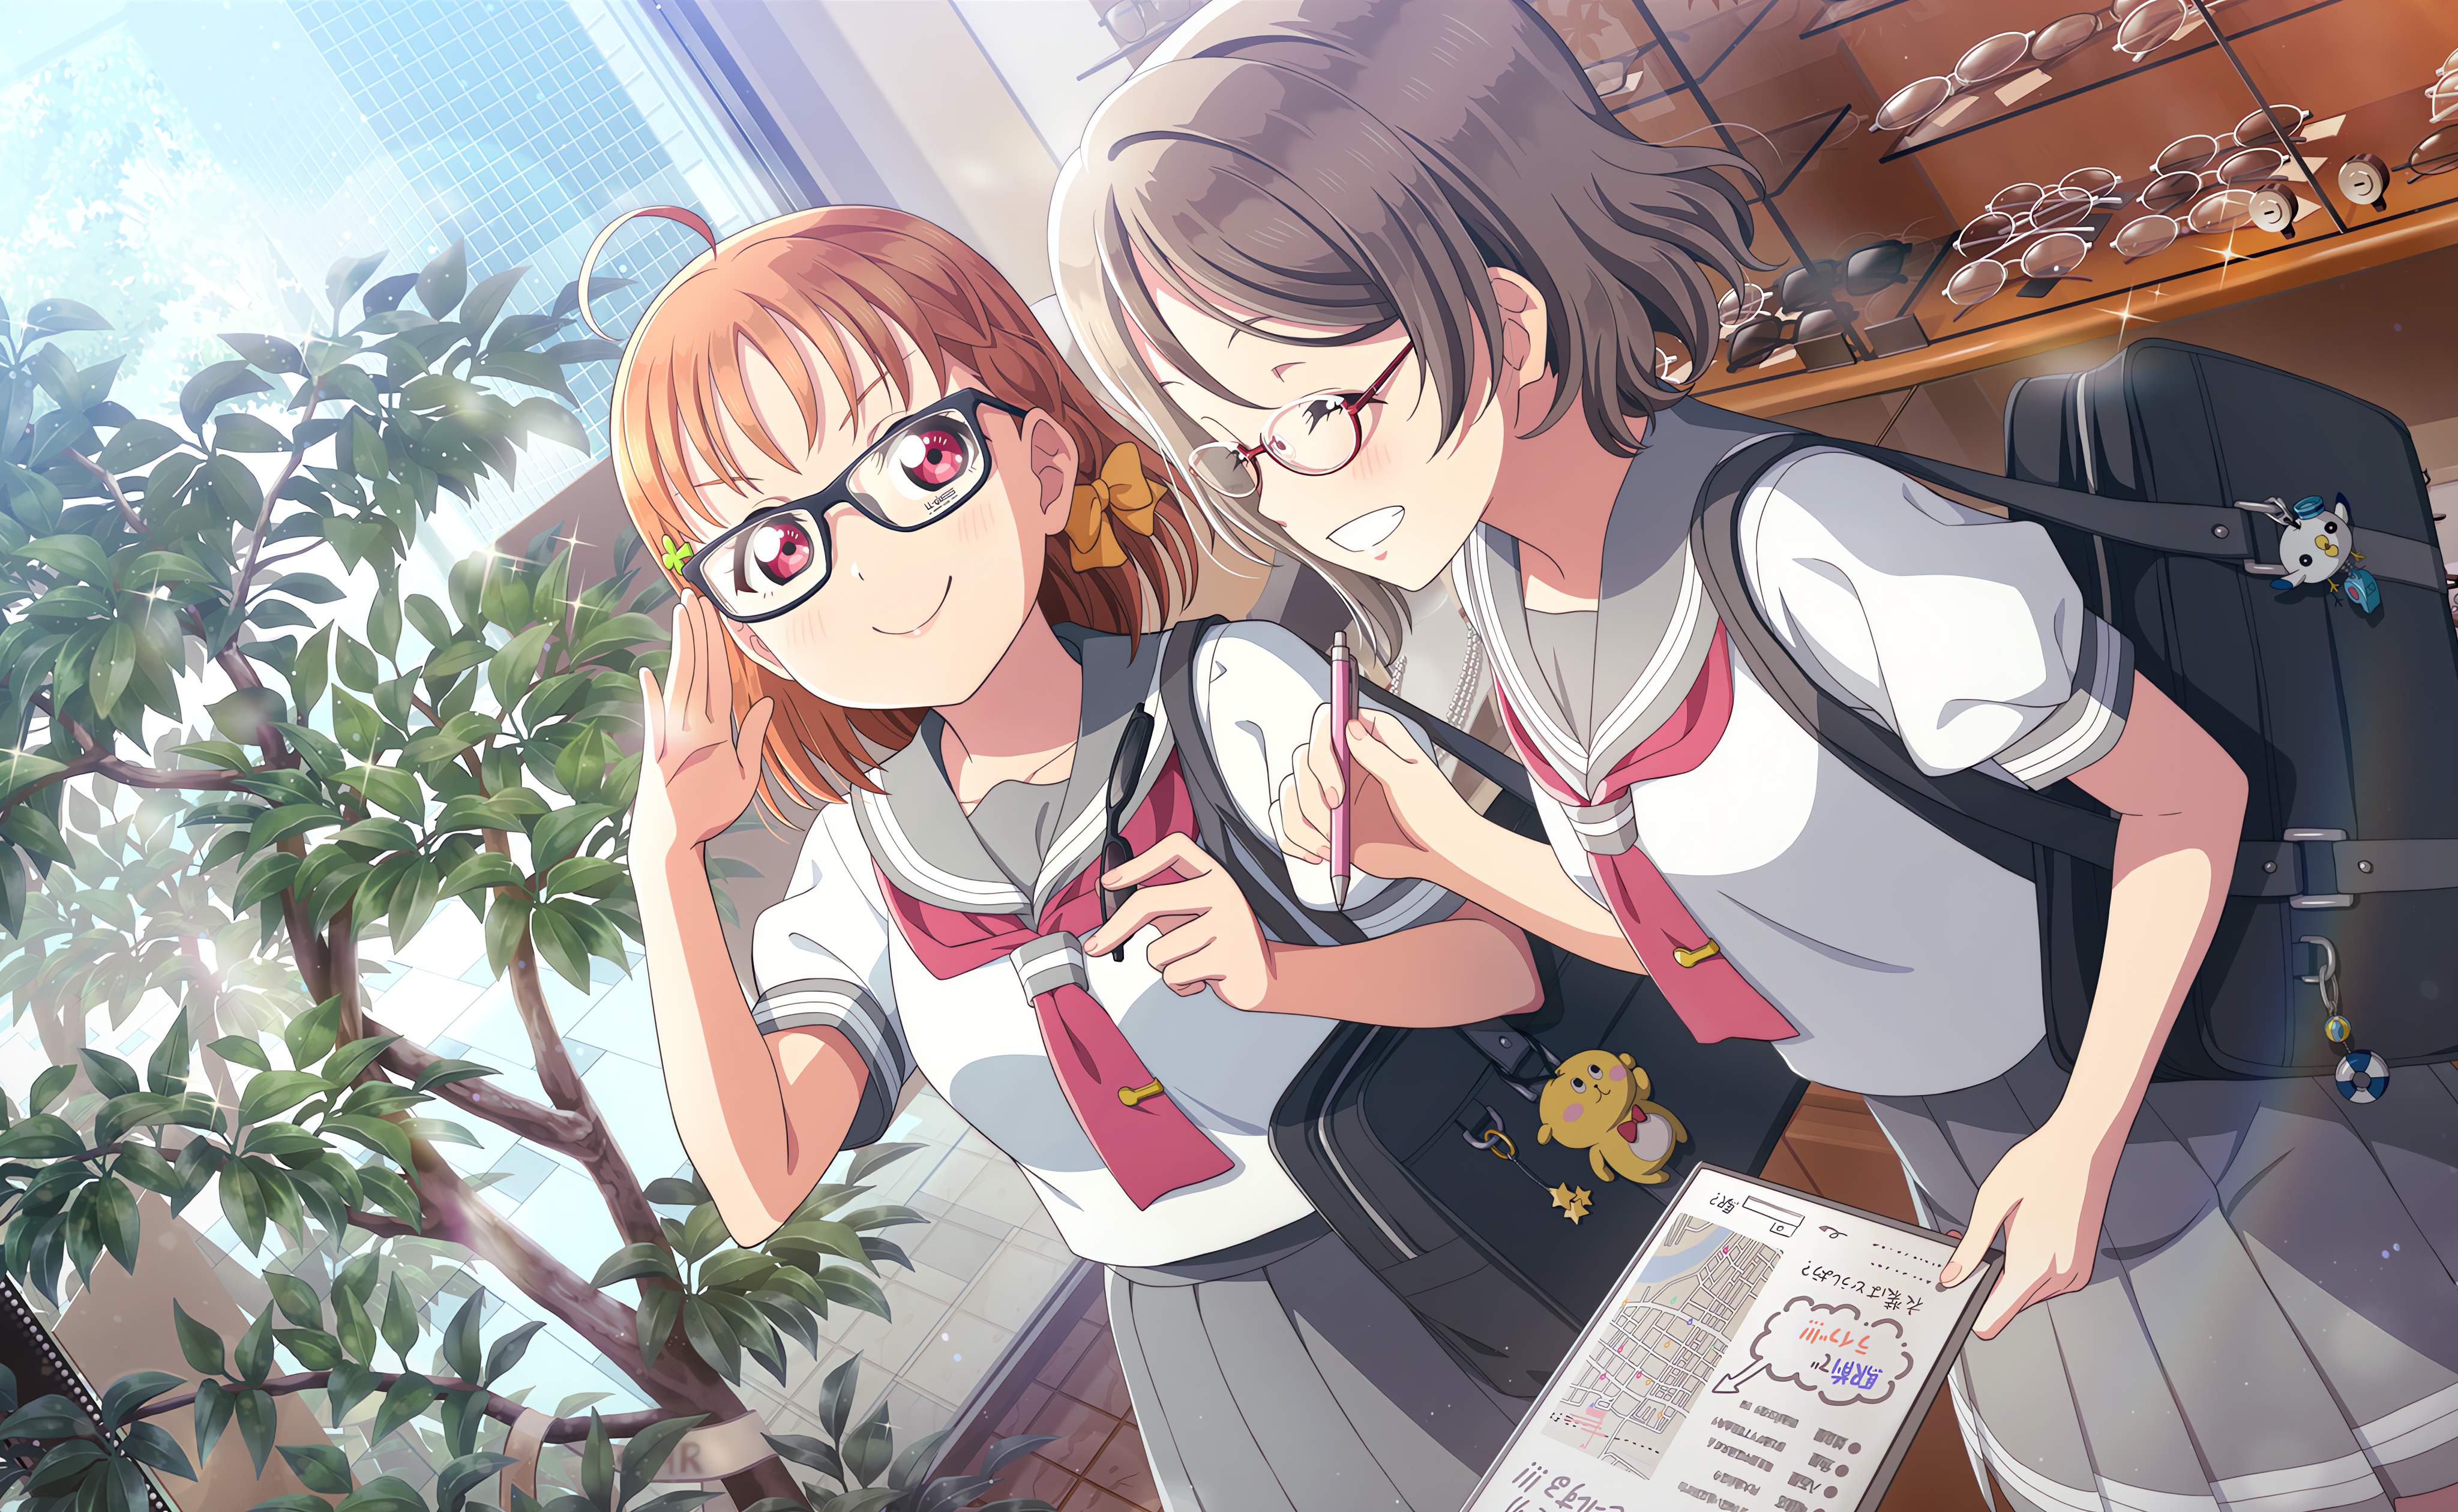 Anime 4096x2520 Takami Chika Love Live! Love Live! Sunshine anime anime girls glasses smiling leaves stars schoolgirl school uniform short hair closed eyes Japanese